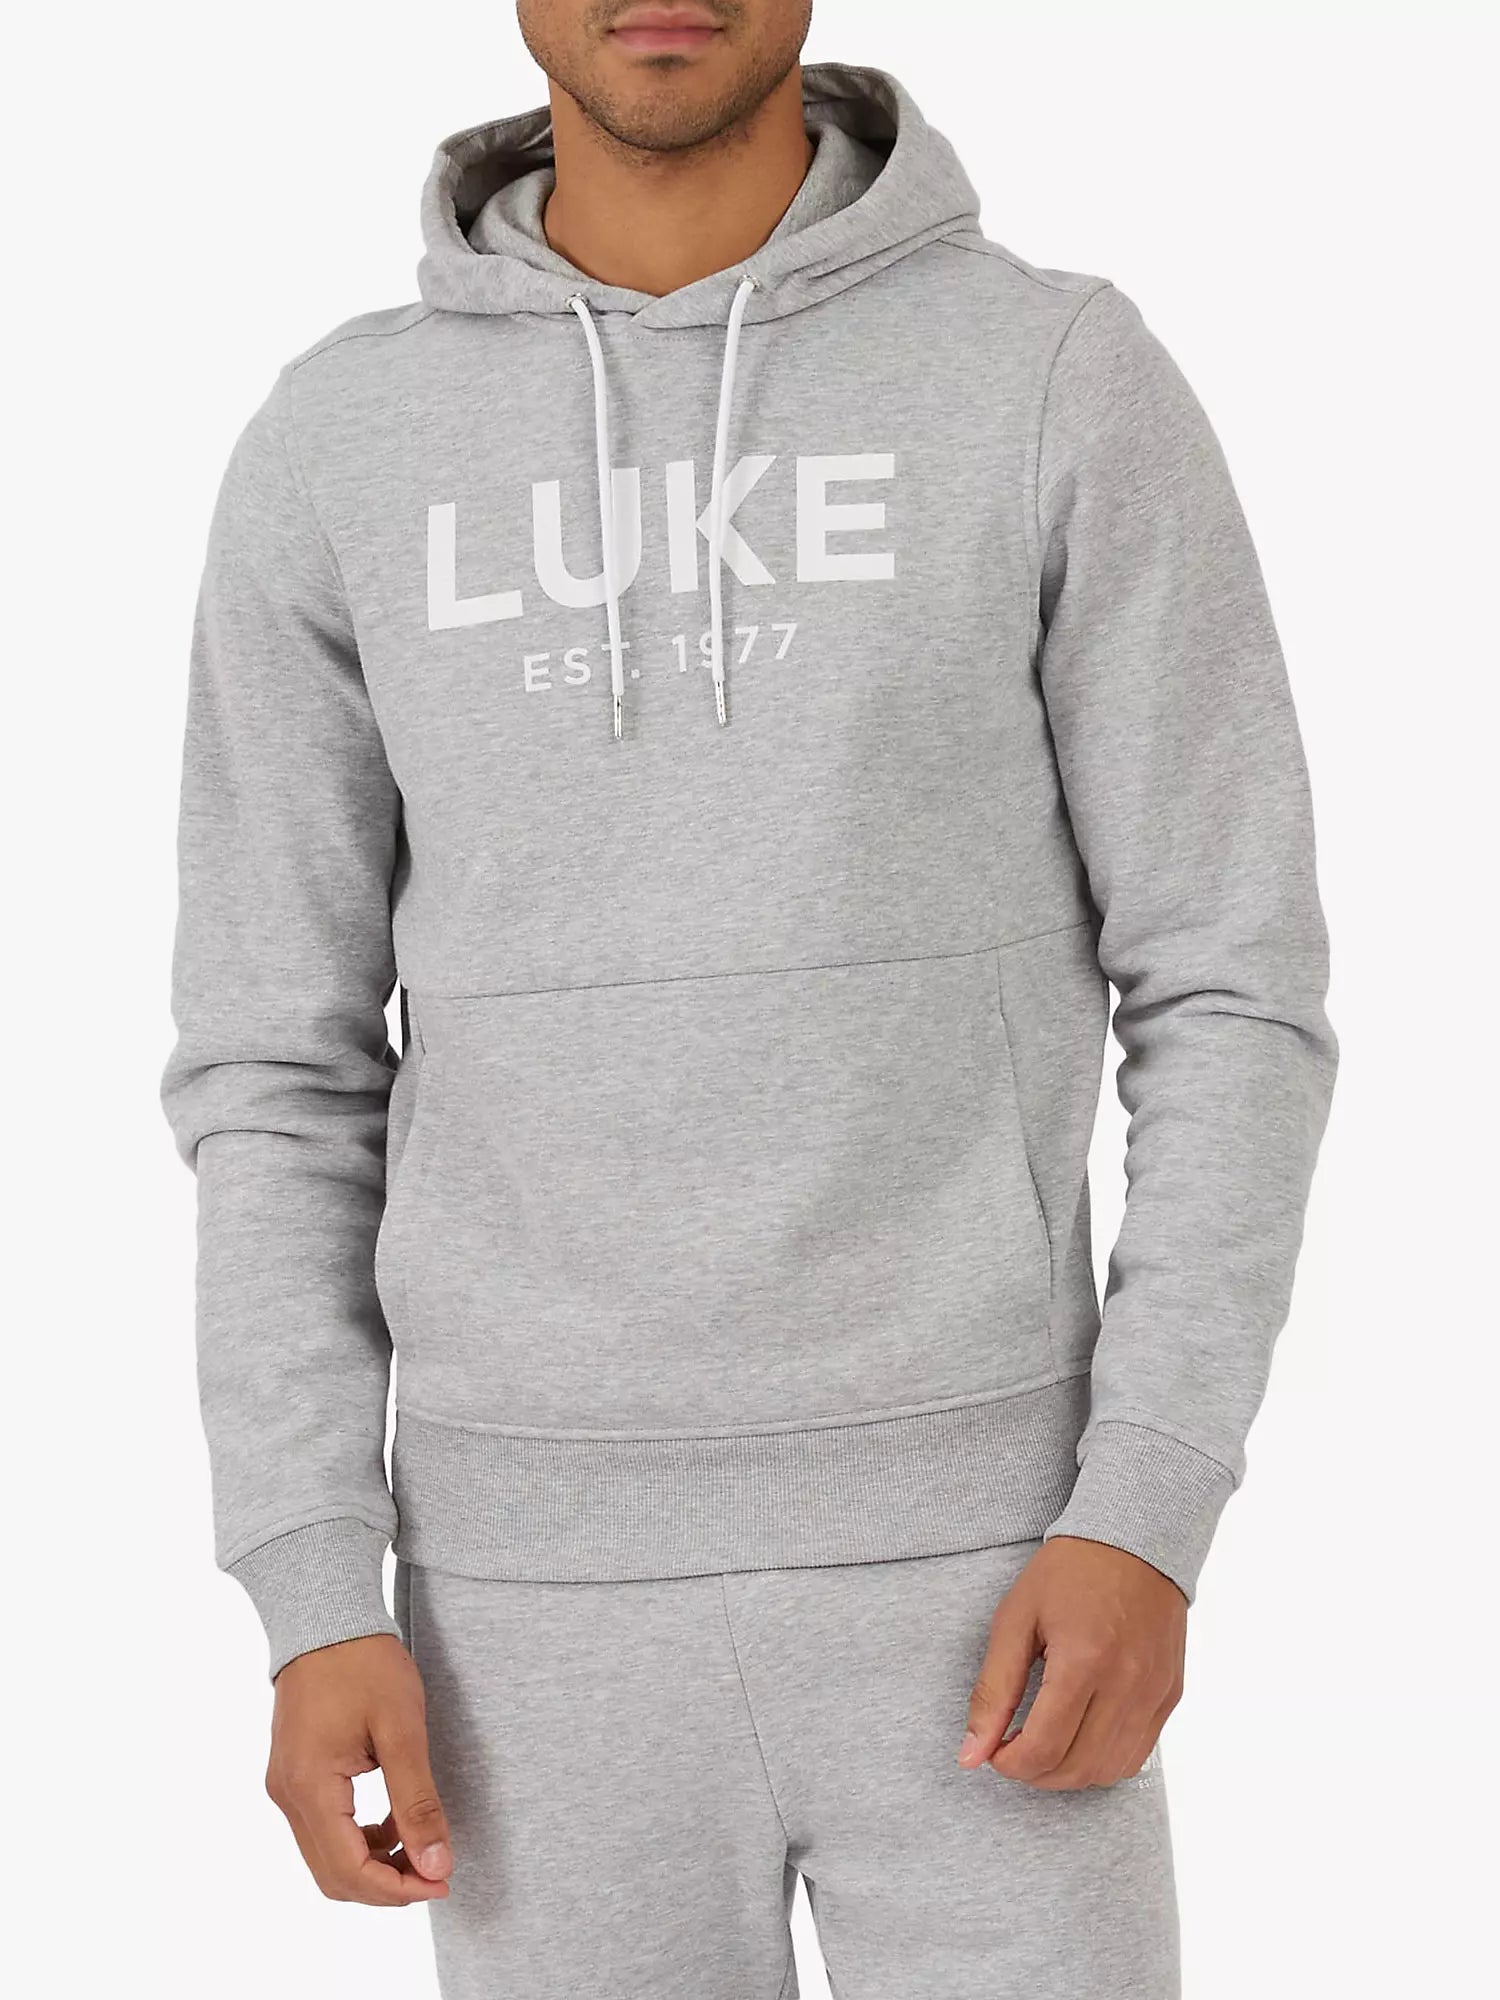 Luke Grand LUKE Est. 1977 Hoodie Marl Grey - Raw Menswear